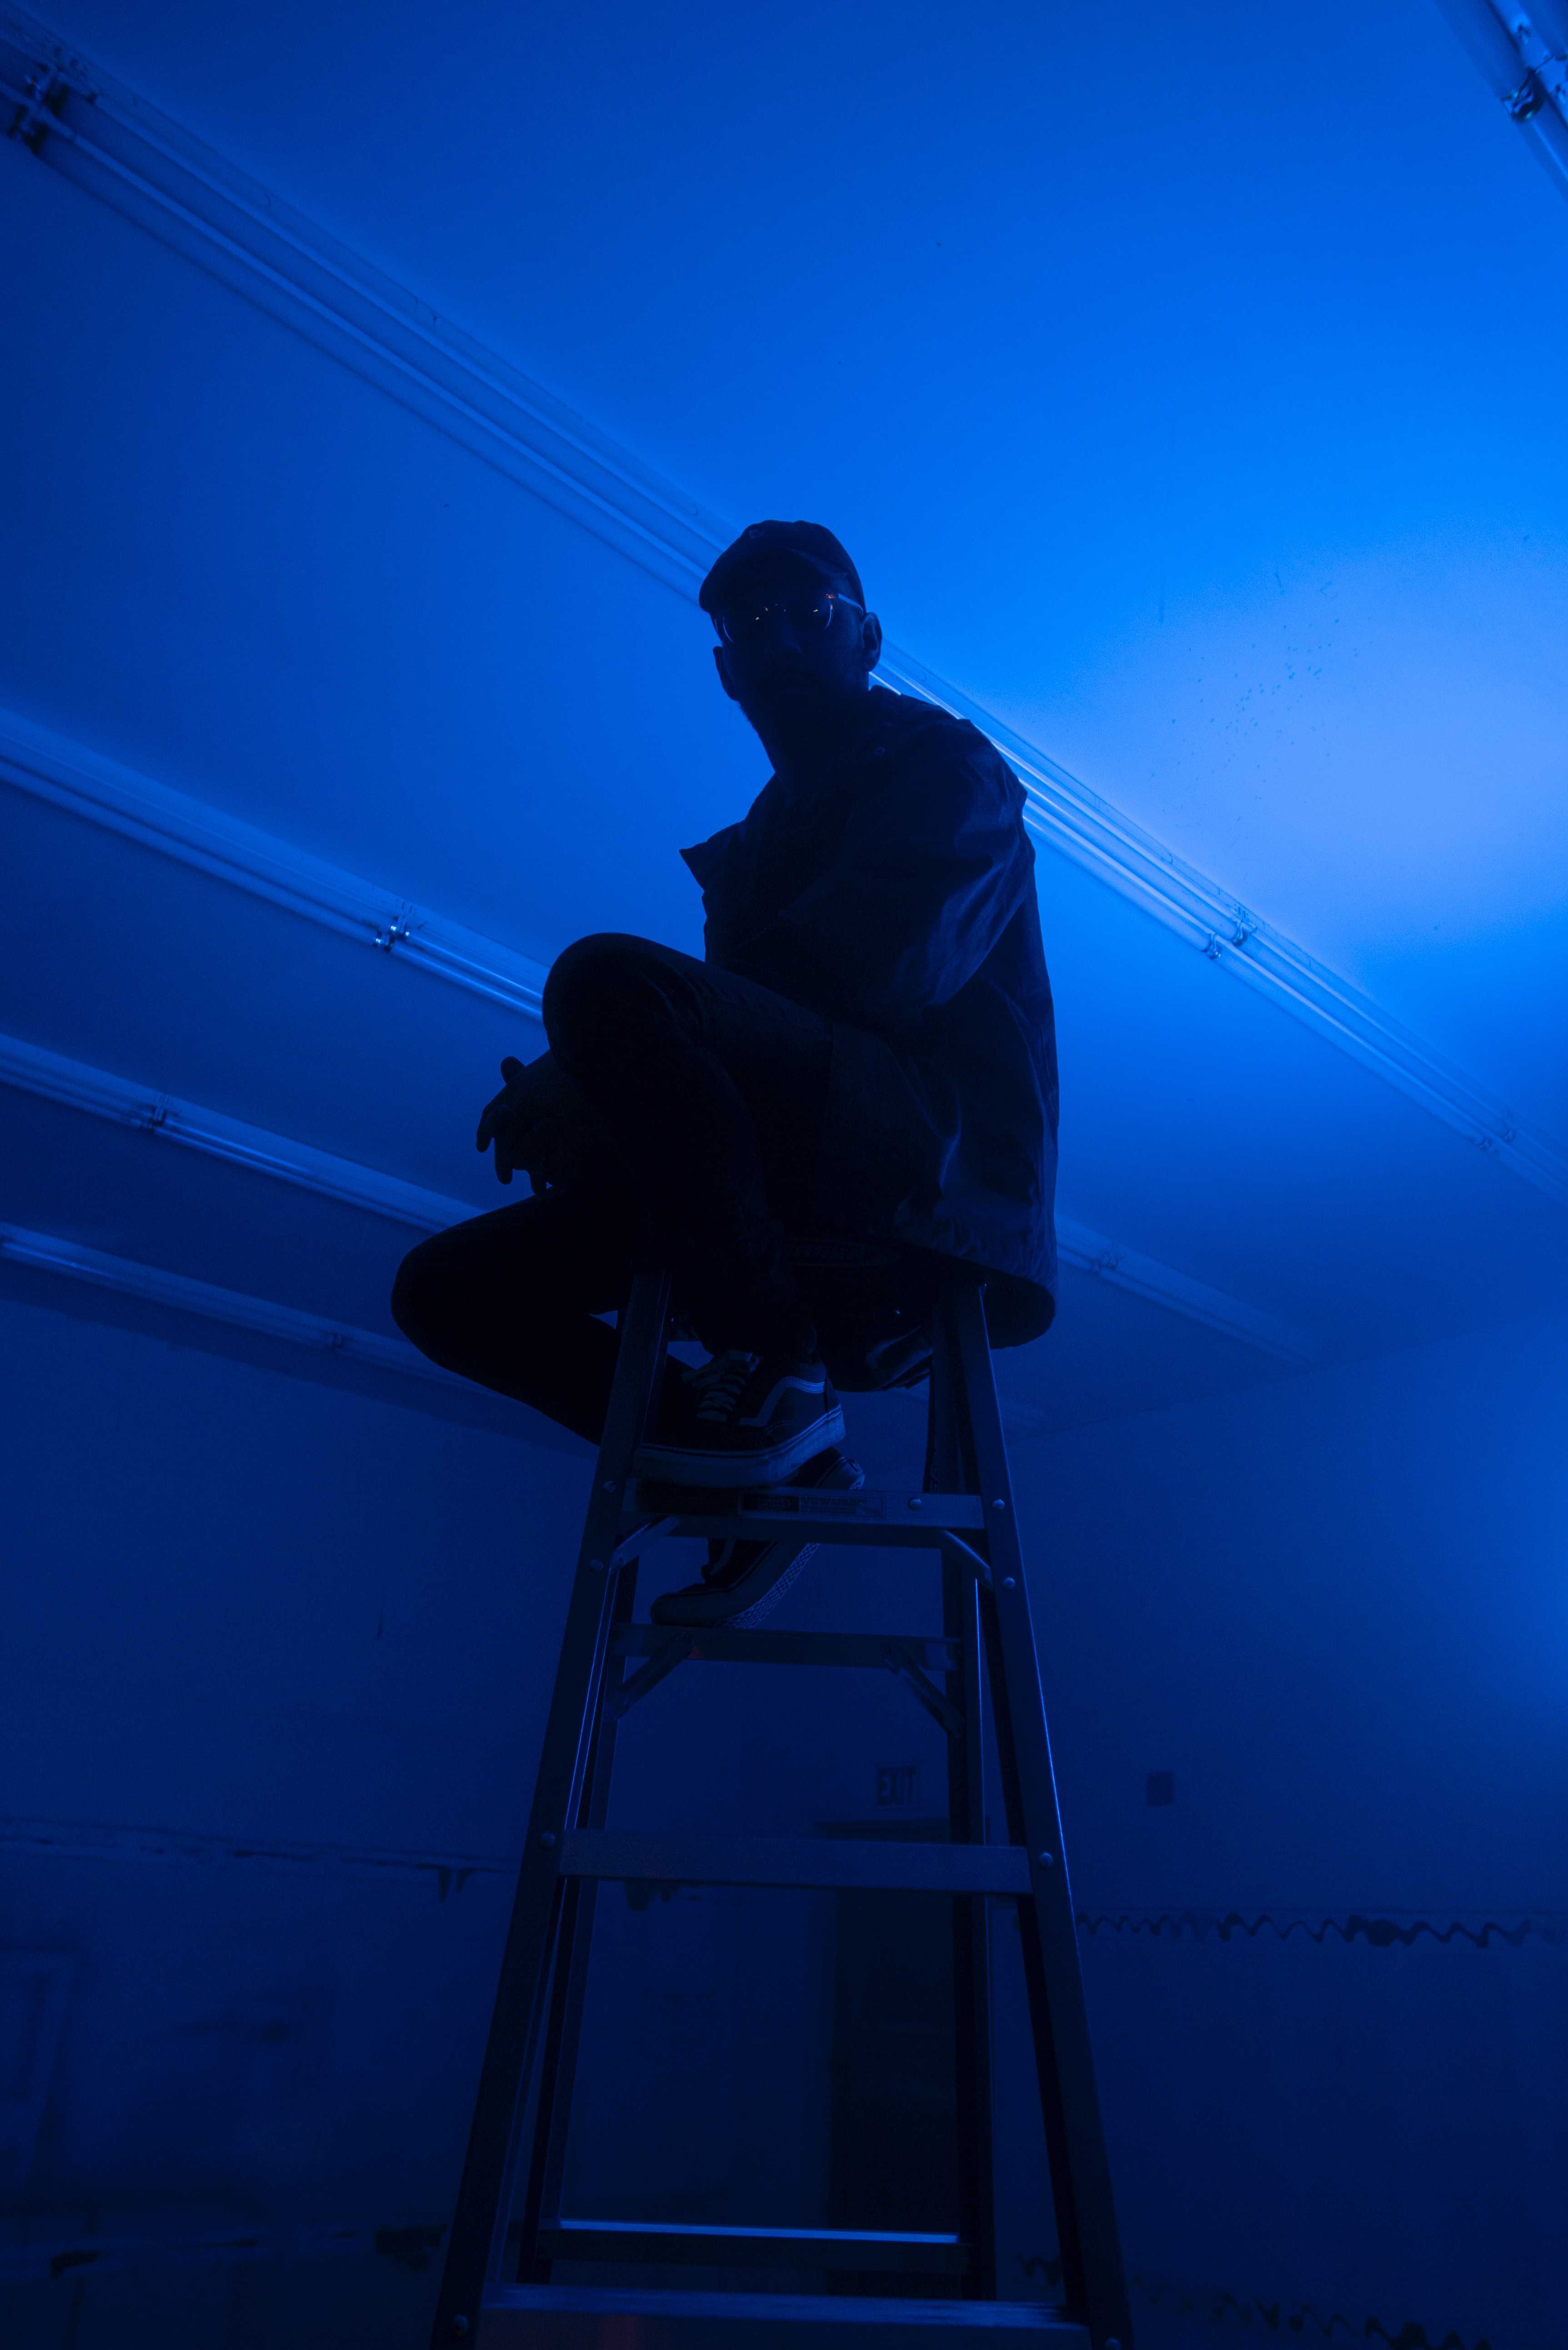 1920x1080 Background blue, dark, neon, stairs, ladder, human, person